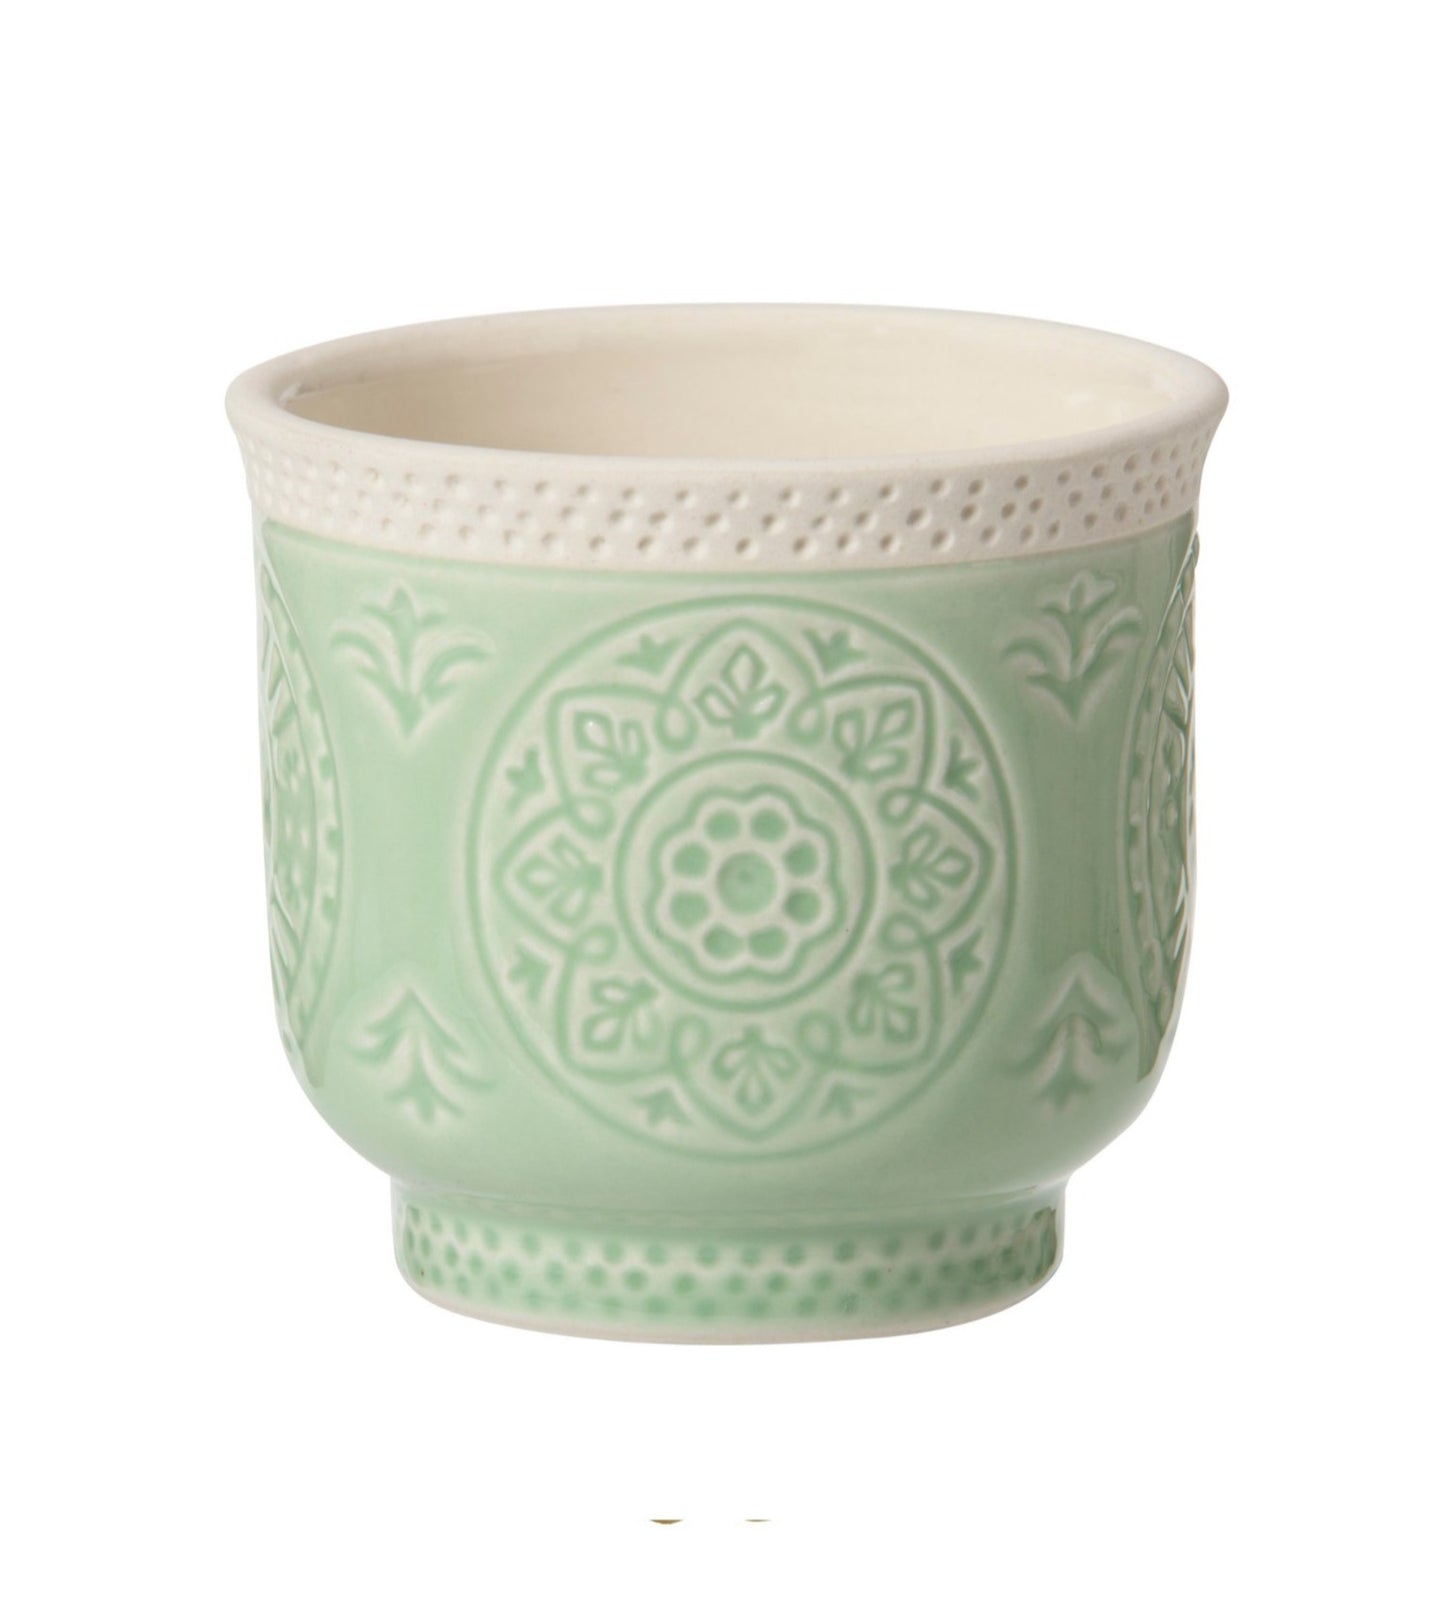 Porta candela tondo in ceramica lavorata di colore verde acqua, ideale per candele sampler e T-Light. Dimensioni: ø 6,8 cm, altezza cm 6. In negozio e online su tuttochic.it